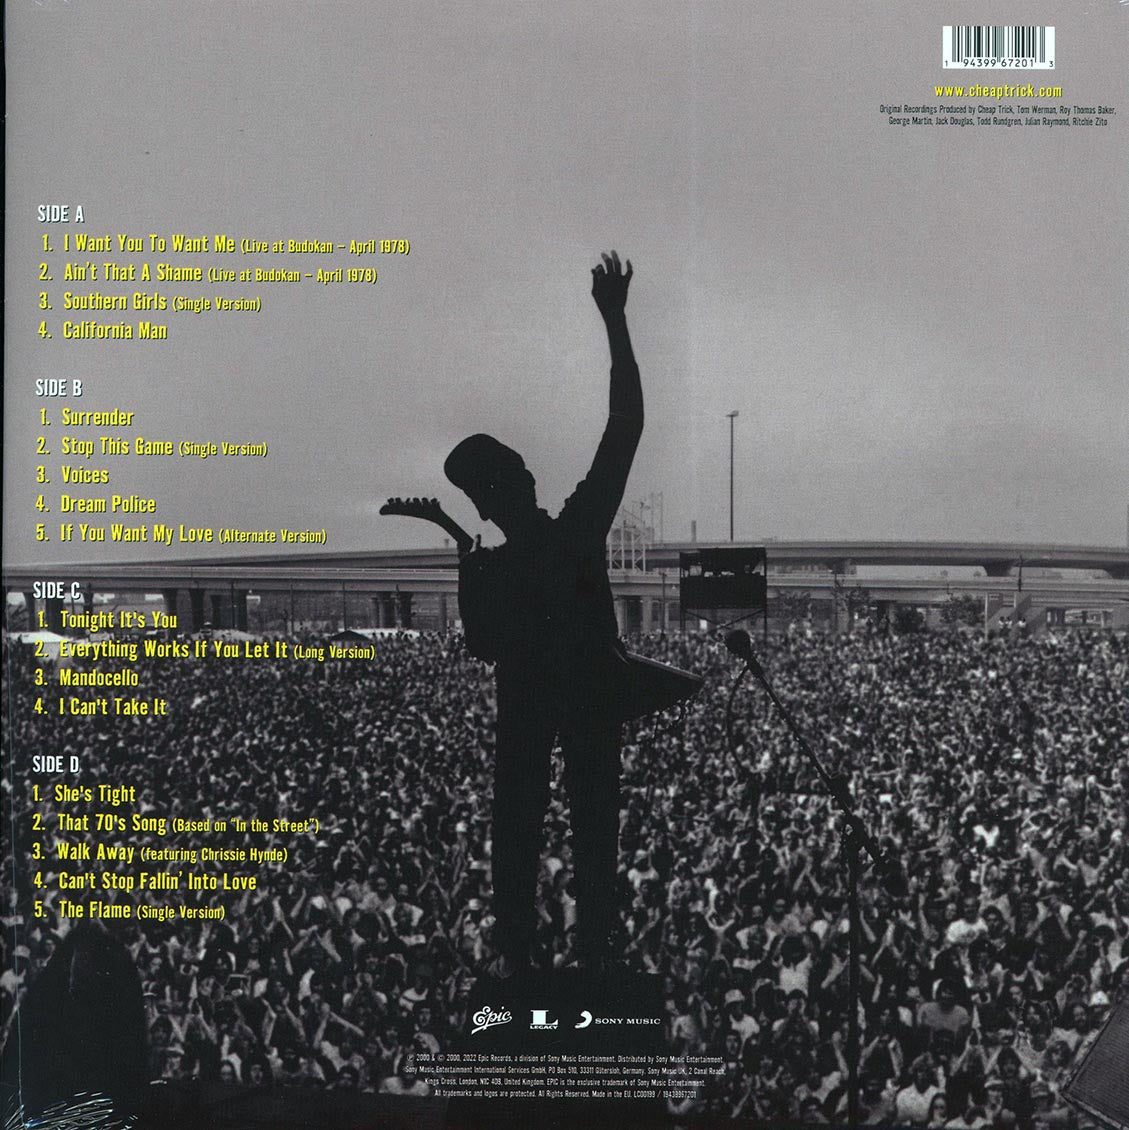 Cheap Trick - Authorized Greatest Hits (2xLP) - Vinyl LP, LP